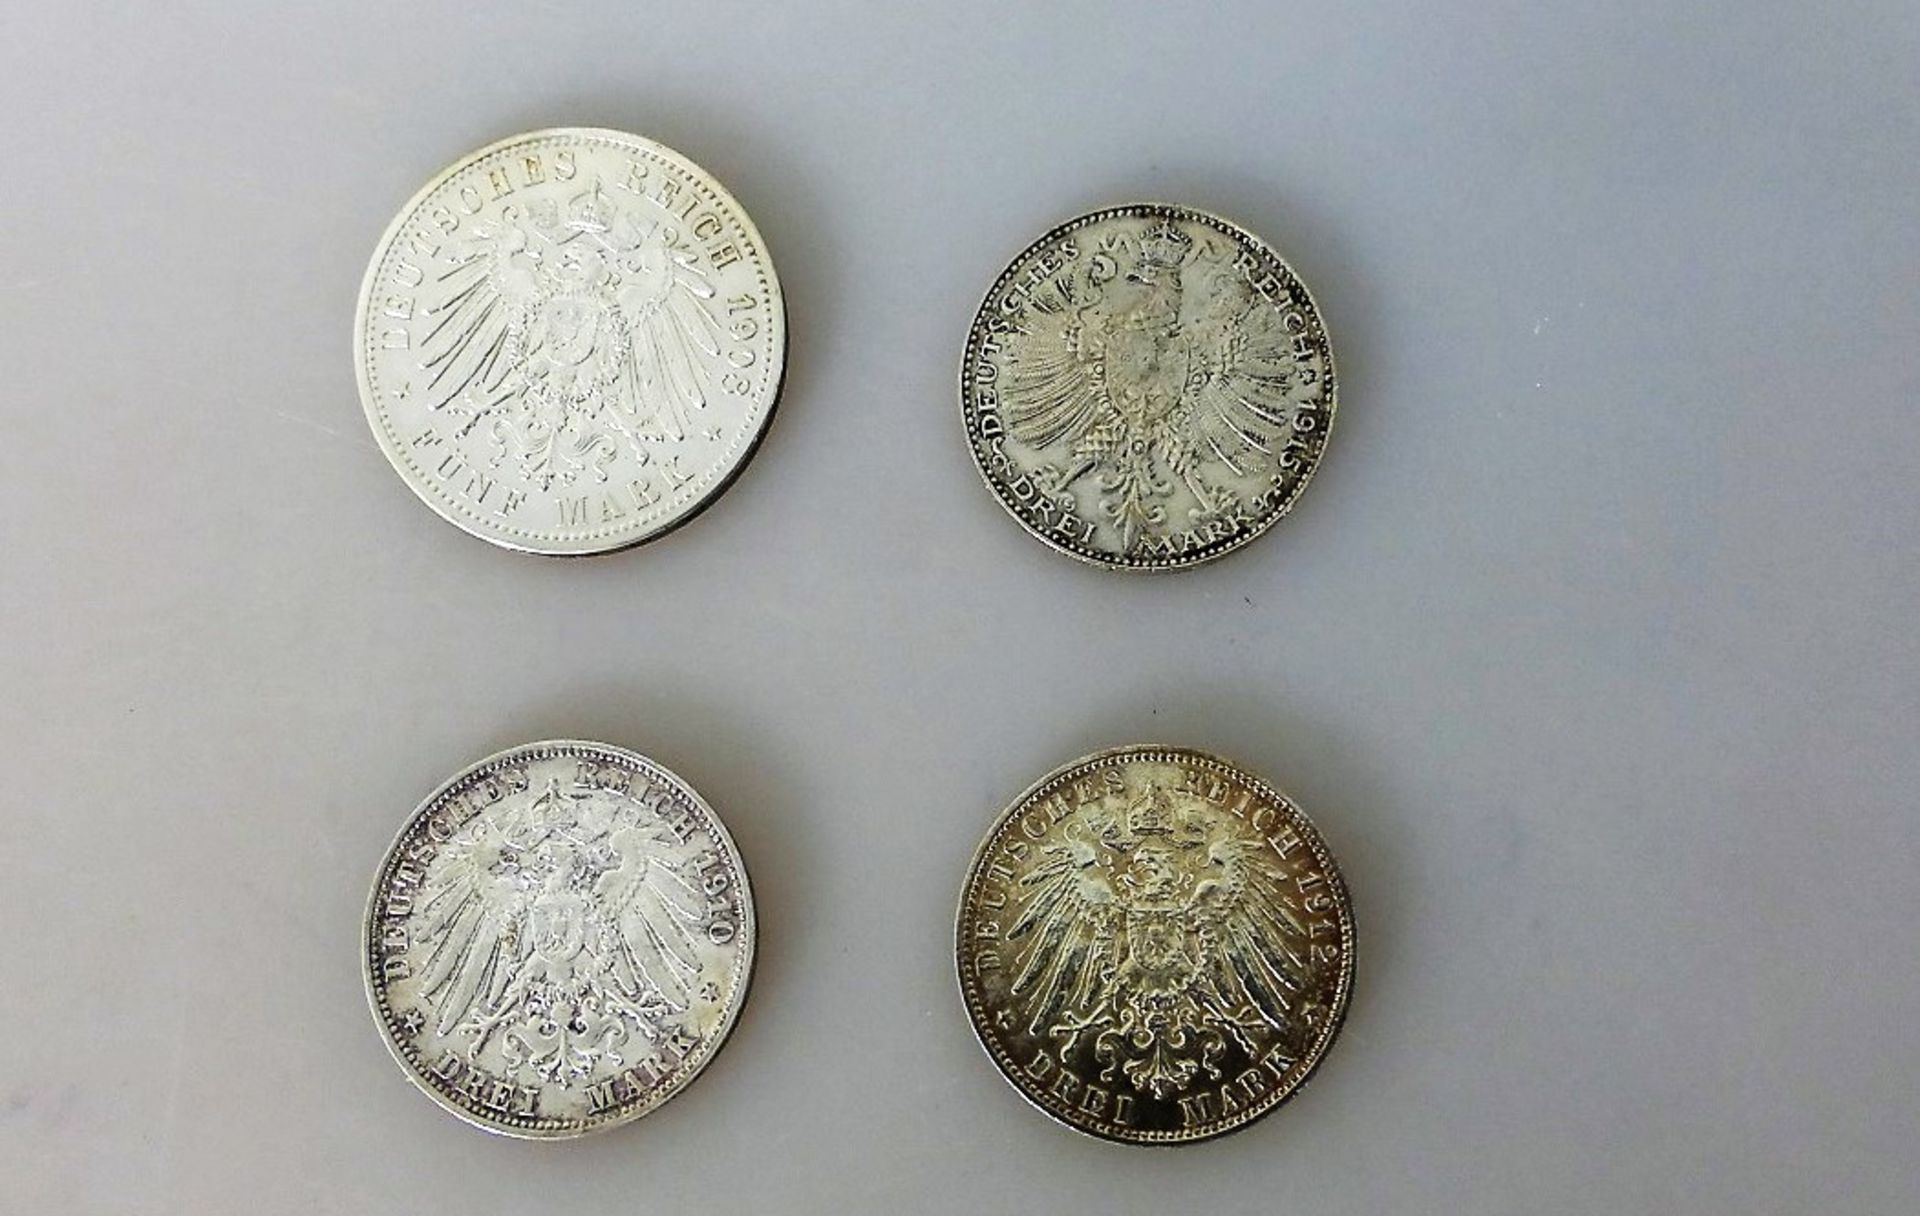 Kaiserreich, 4 Münzen, Sachsen Weimar Eisenach 3 Mark 1915 (Jaeger 163), 5 Mark 1908 - Bild 2 aus 2